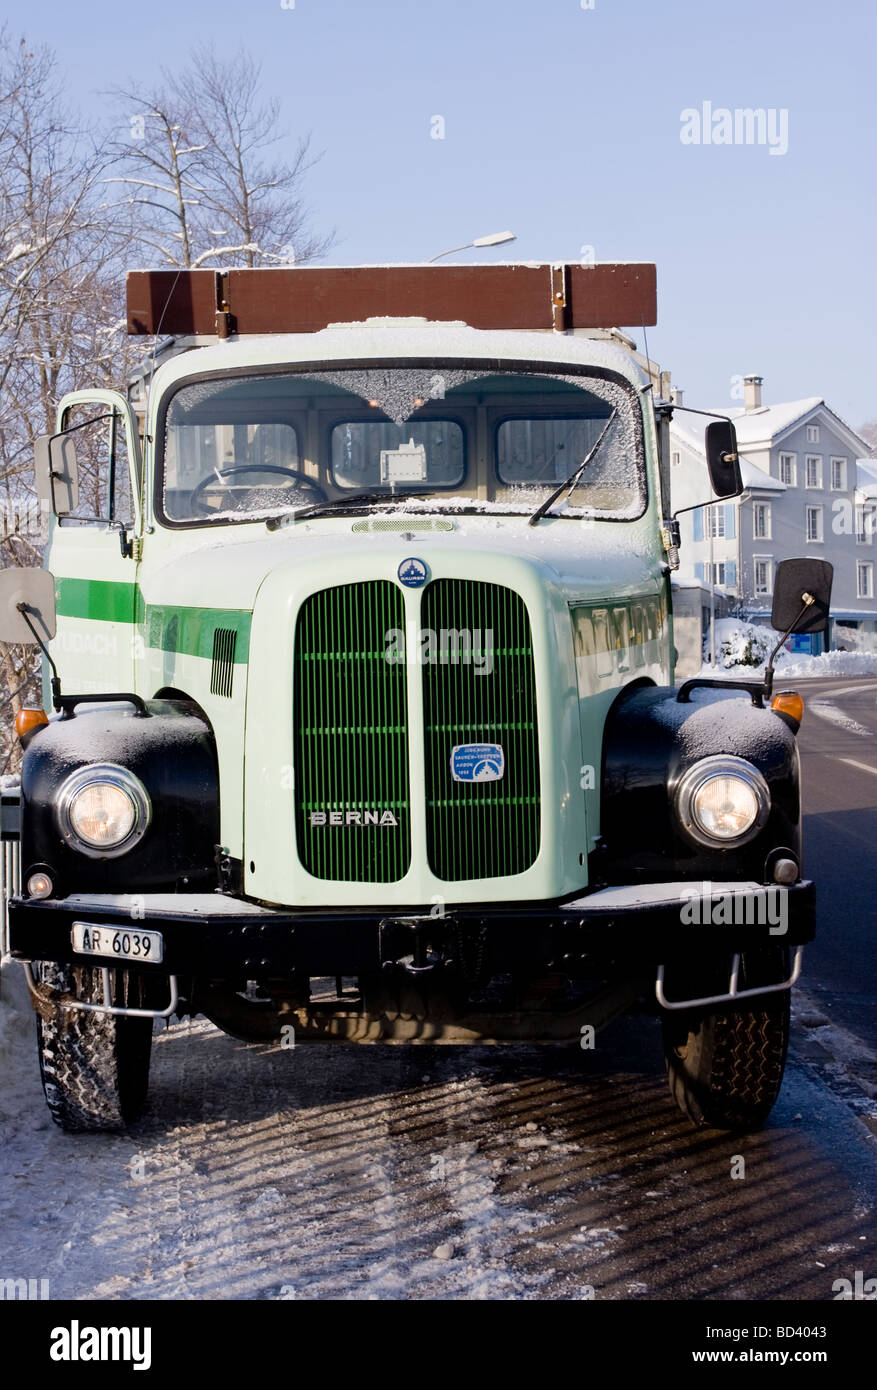 Schweizer Oldtimer LKW geparkt am Straßenrand Stockfotografie - Alamy